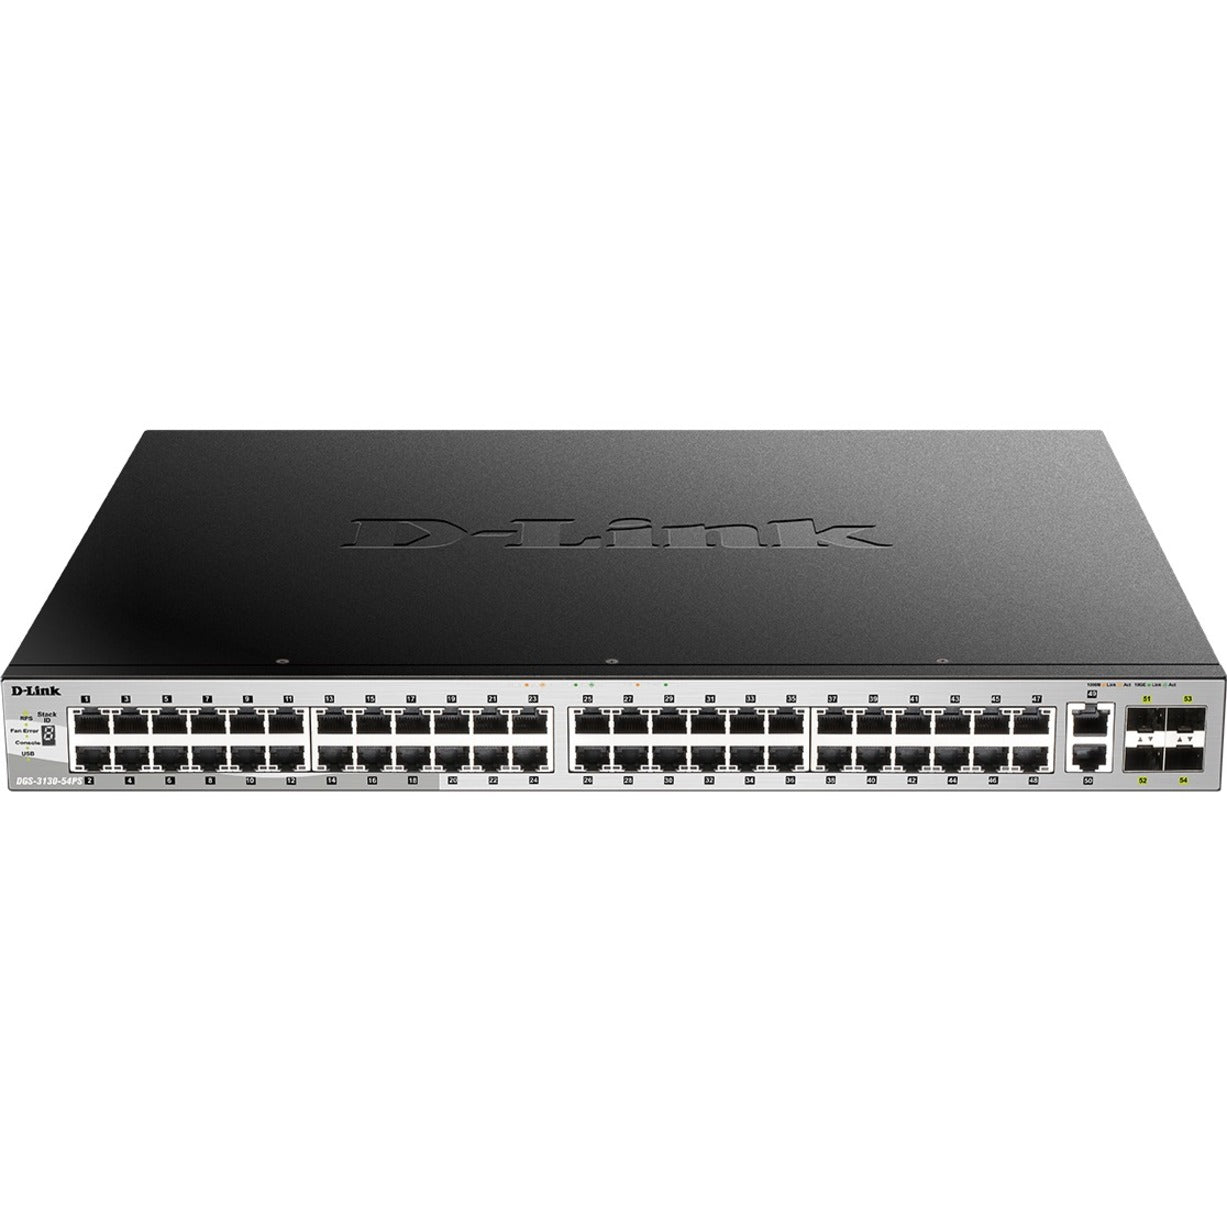 D-Link DGS-3130-54PS Ethernet Switch, 48 x Gigabit Ethernet Network, 4 x 10 Gigabit Ethernet Uplink, 2 x 10 Gigabit Ethernet Uplink, 50 Total Network Ports